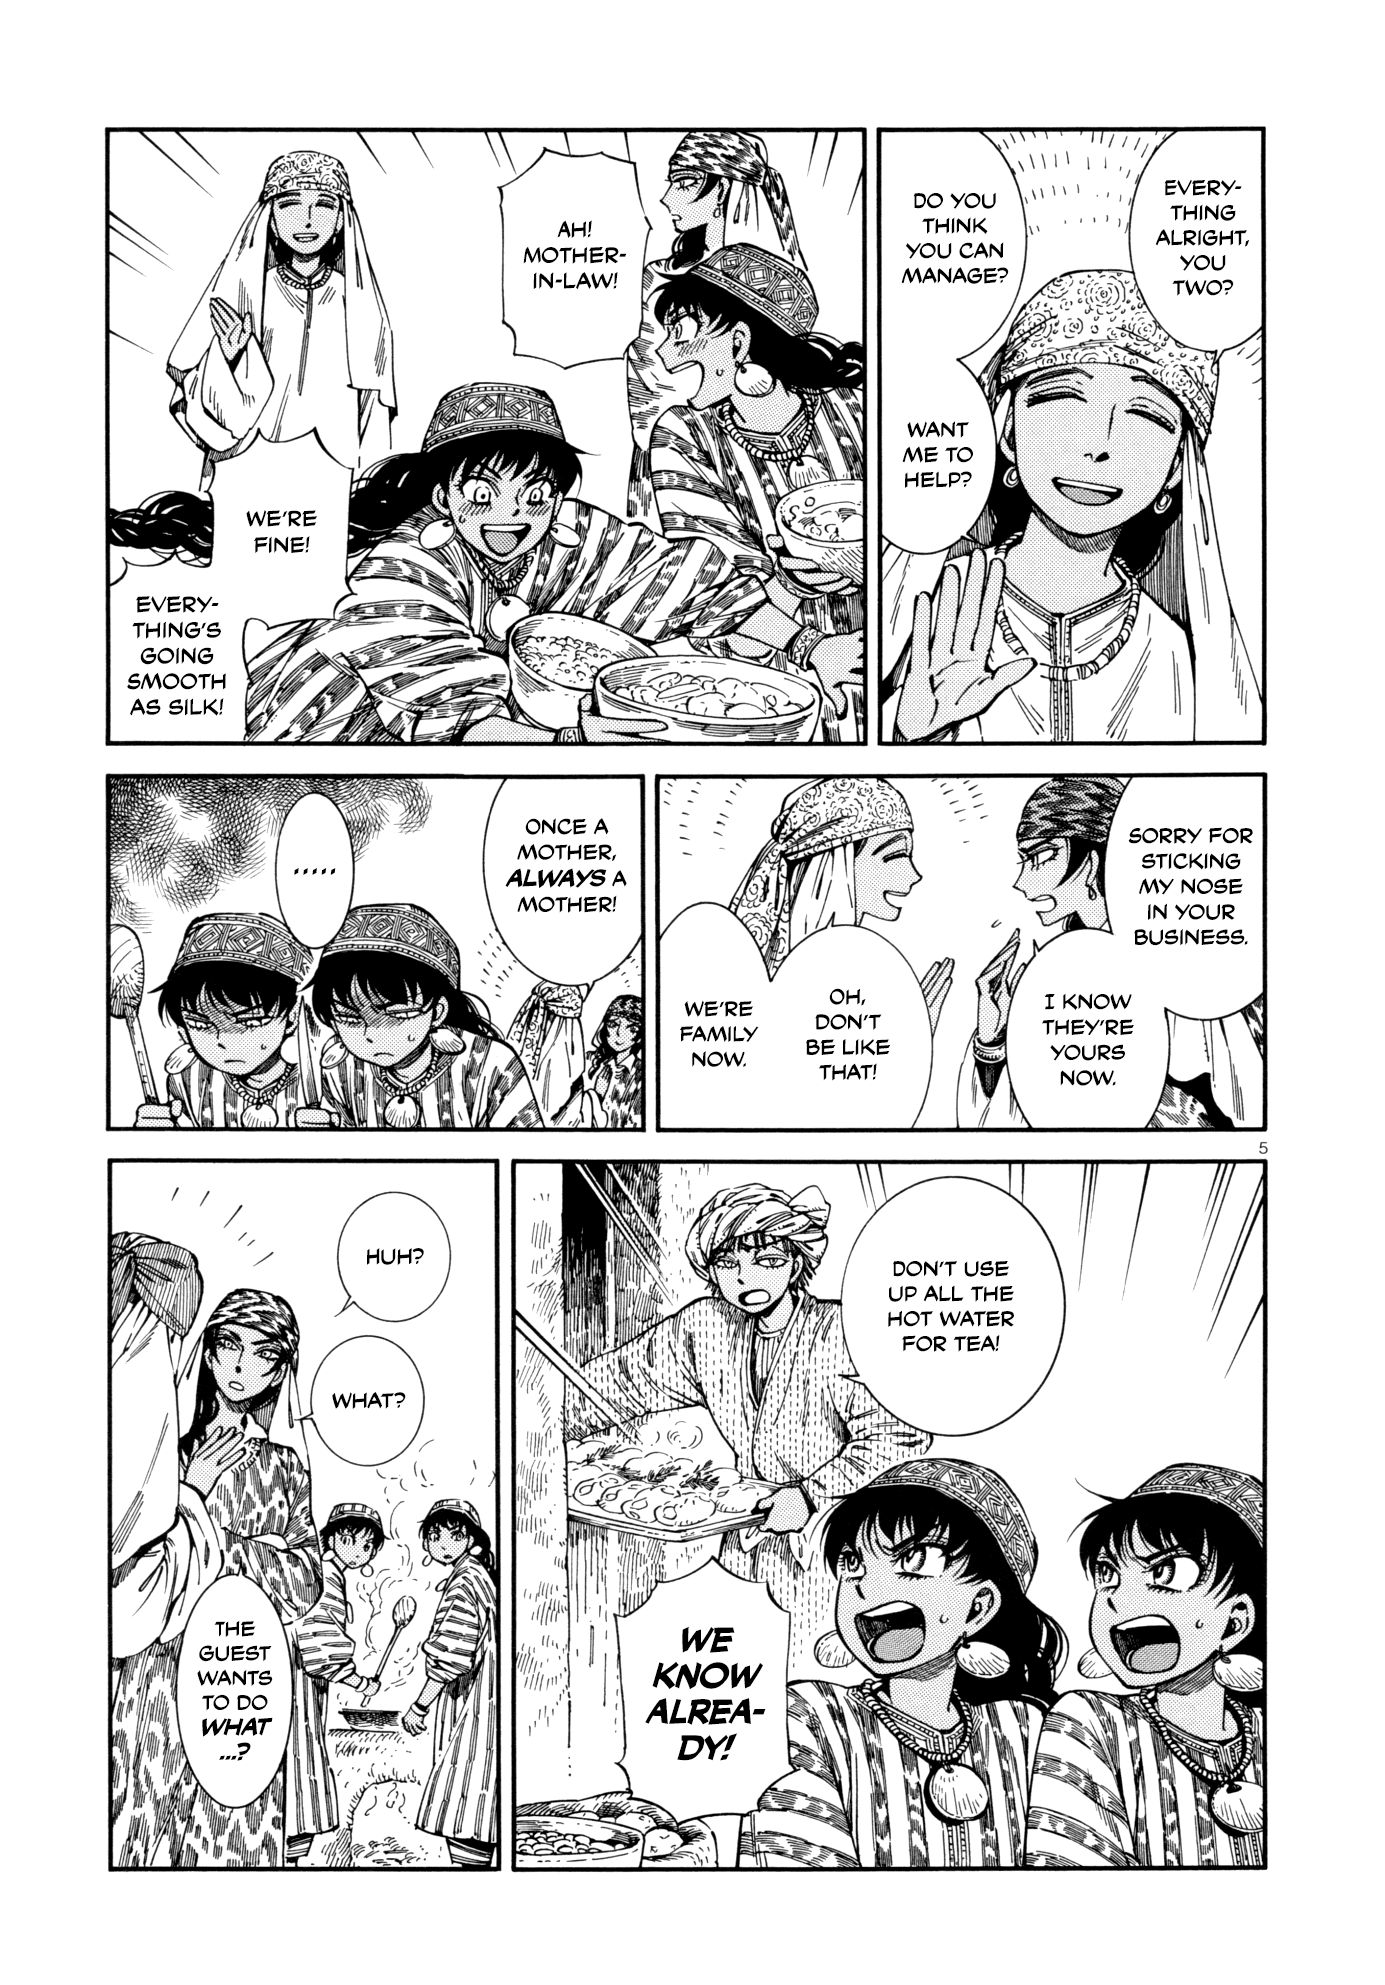 Wotaku ni Koi wa Muzukashii manga - MangaHasu